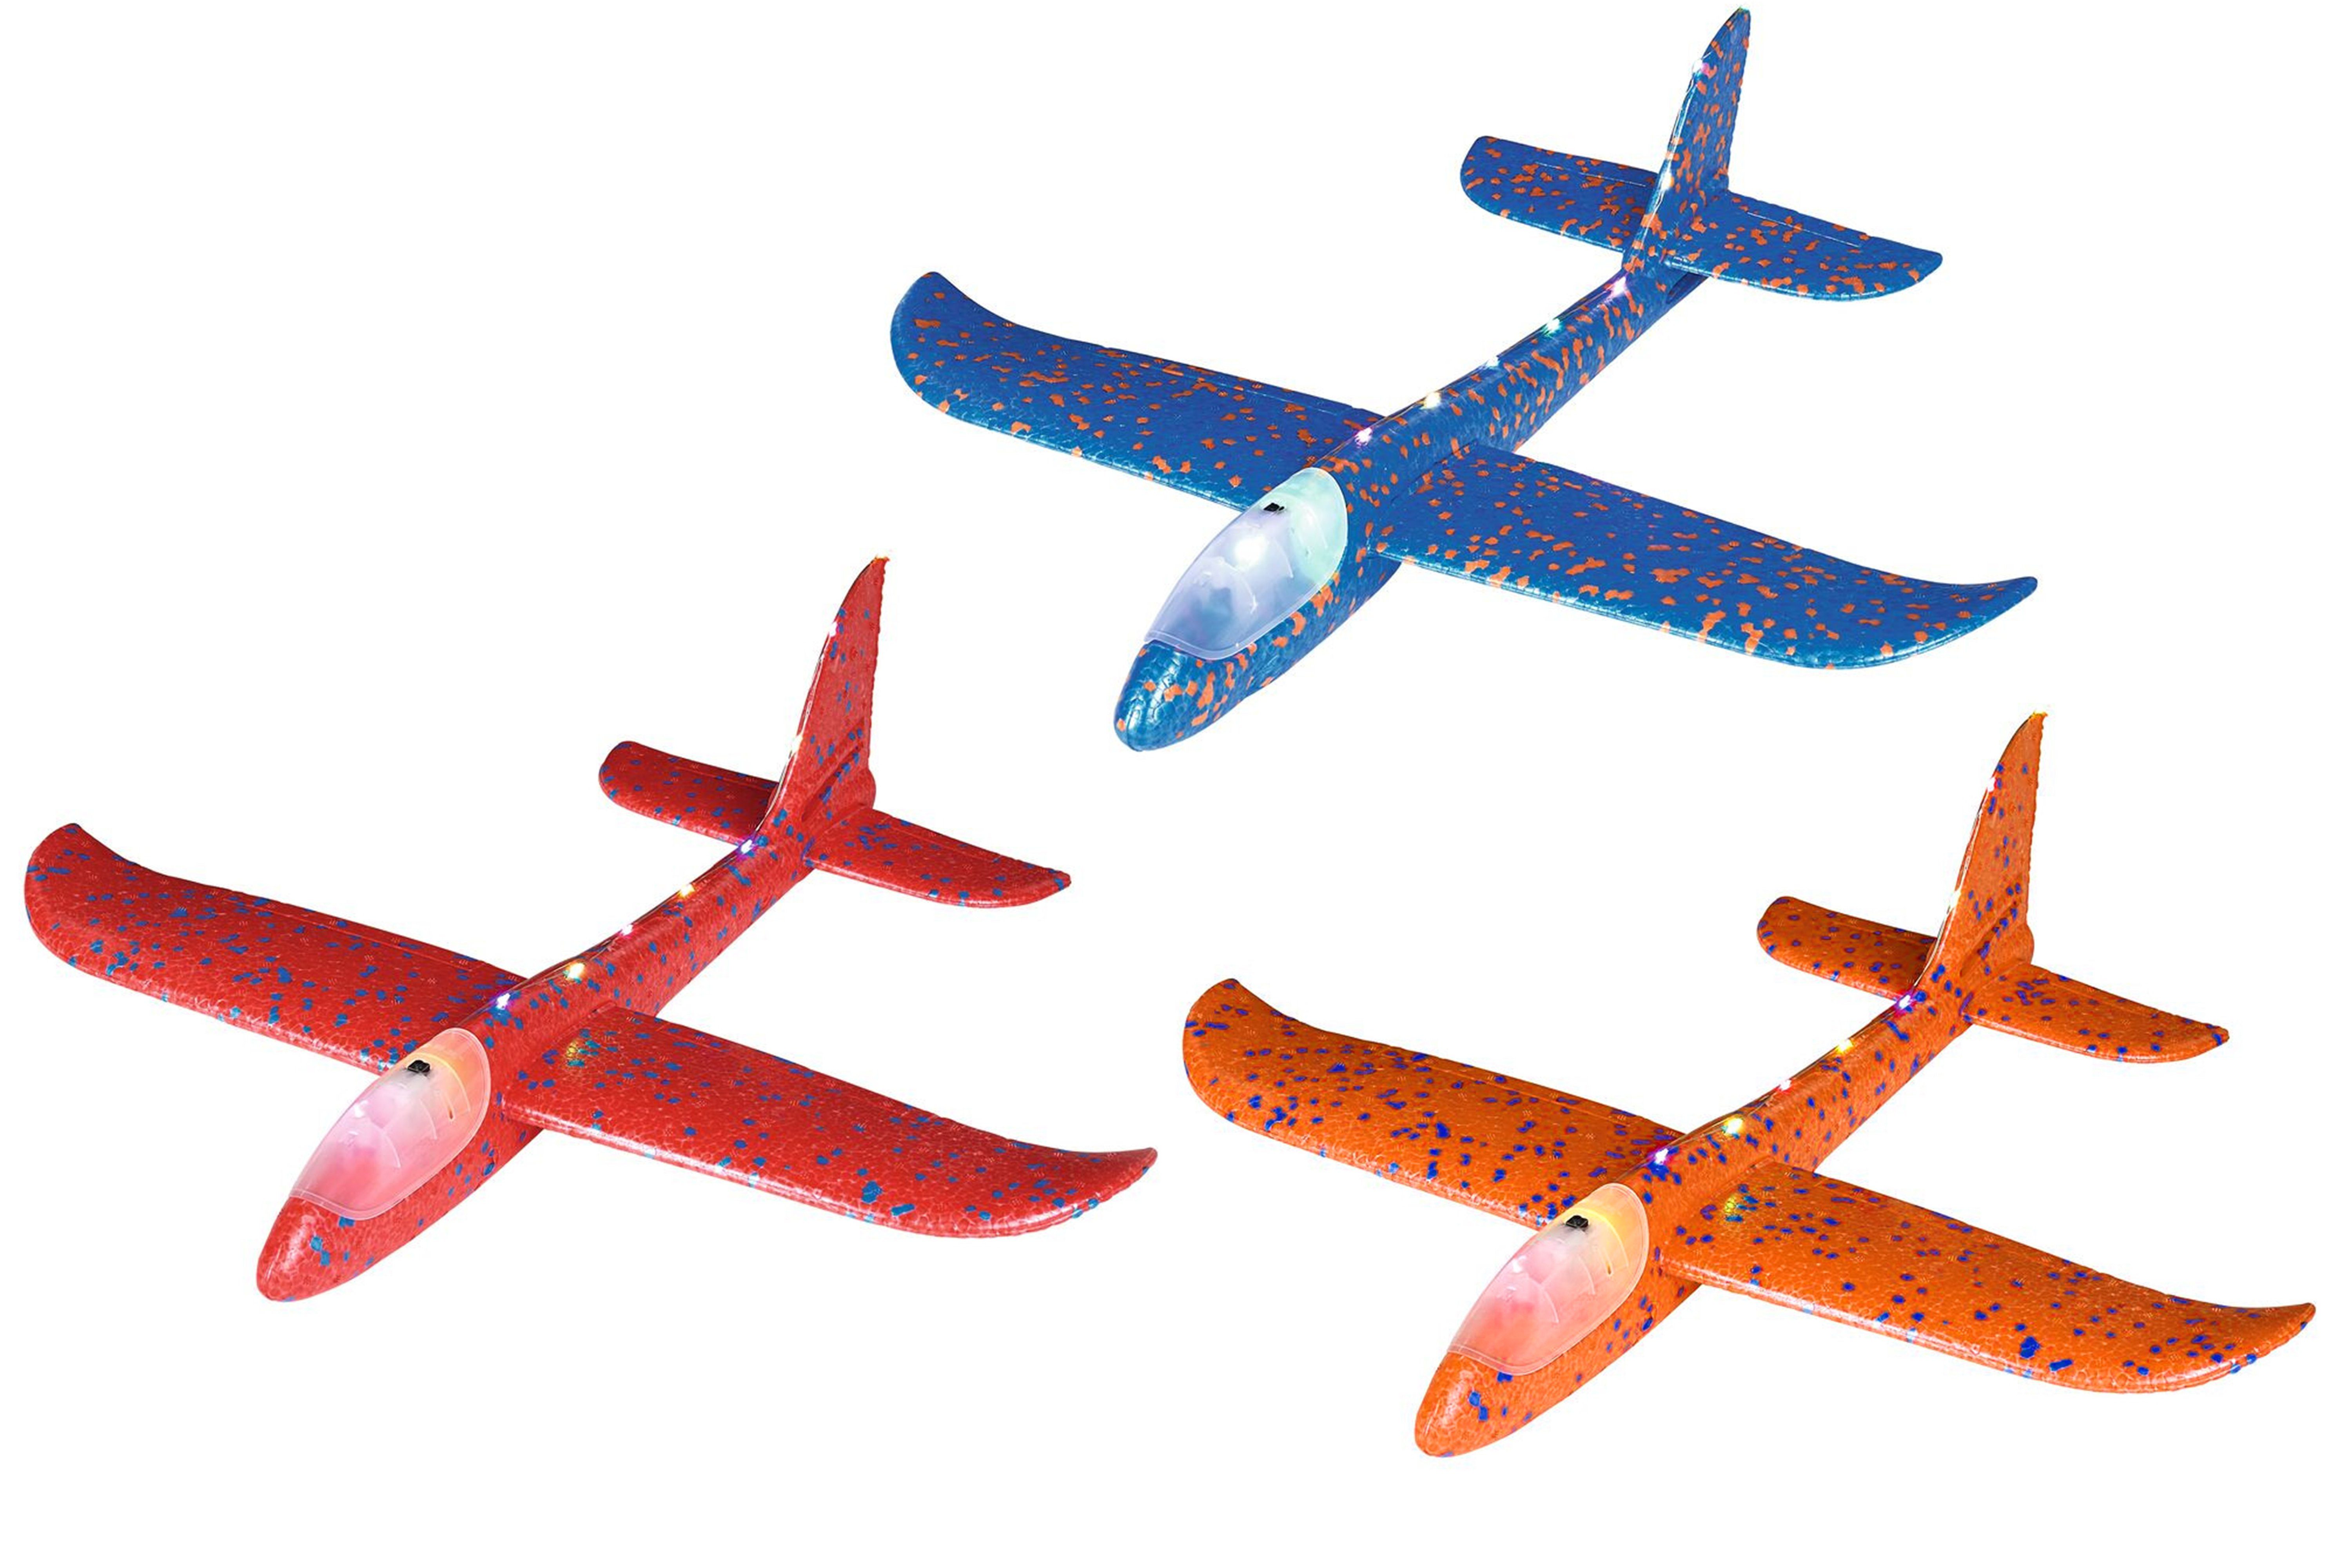 ELLUG Spielzeug-Segelflieger großes XXL Segelflugzeug Segelflieger aus Styropor mit LED Beleuchtung 49*48*12,5cm Flugzeug Flieger Outdoor-Sport Wurf-Spielzeug